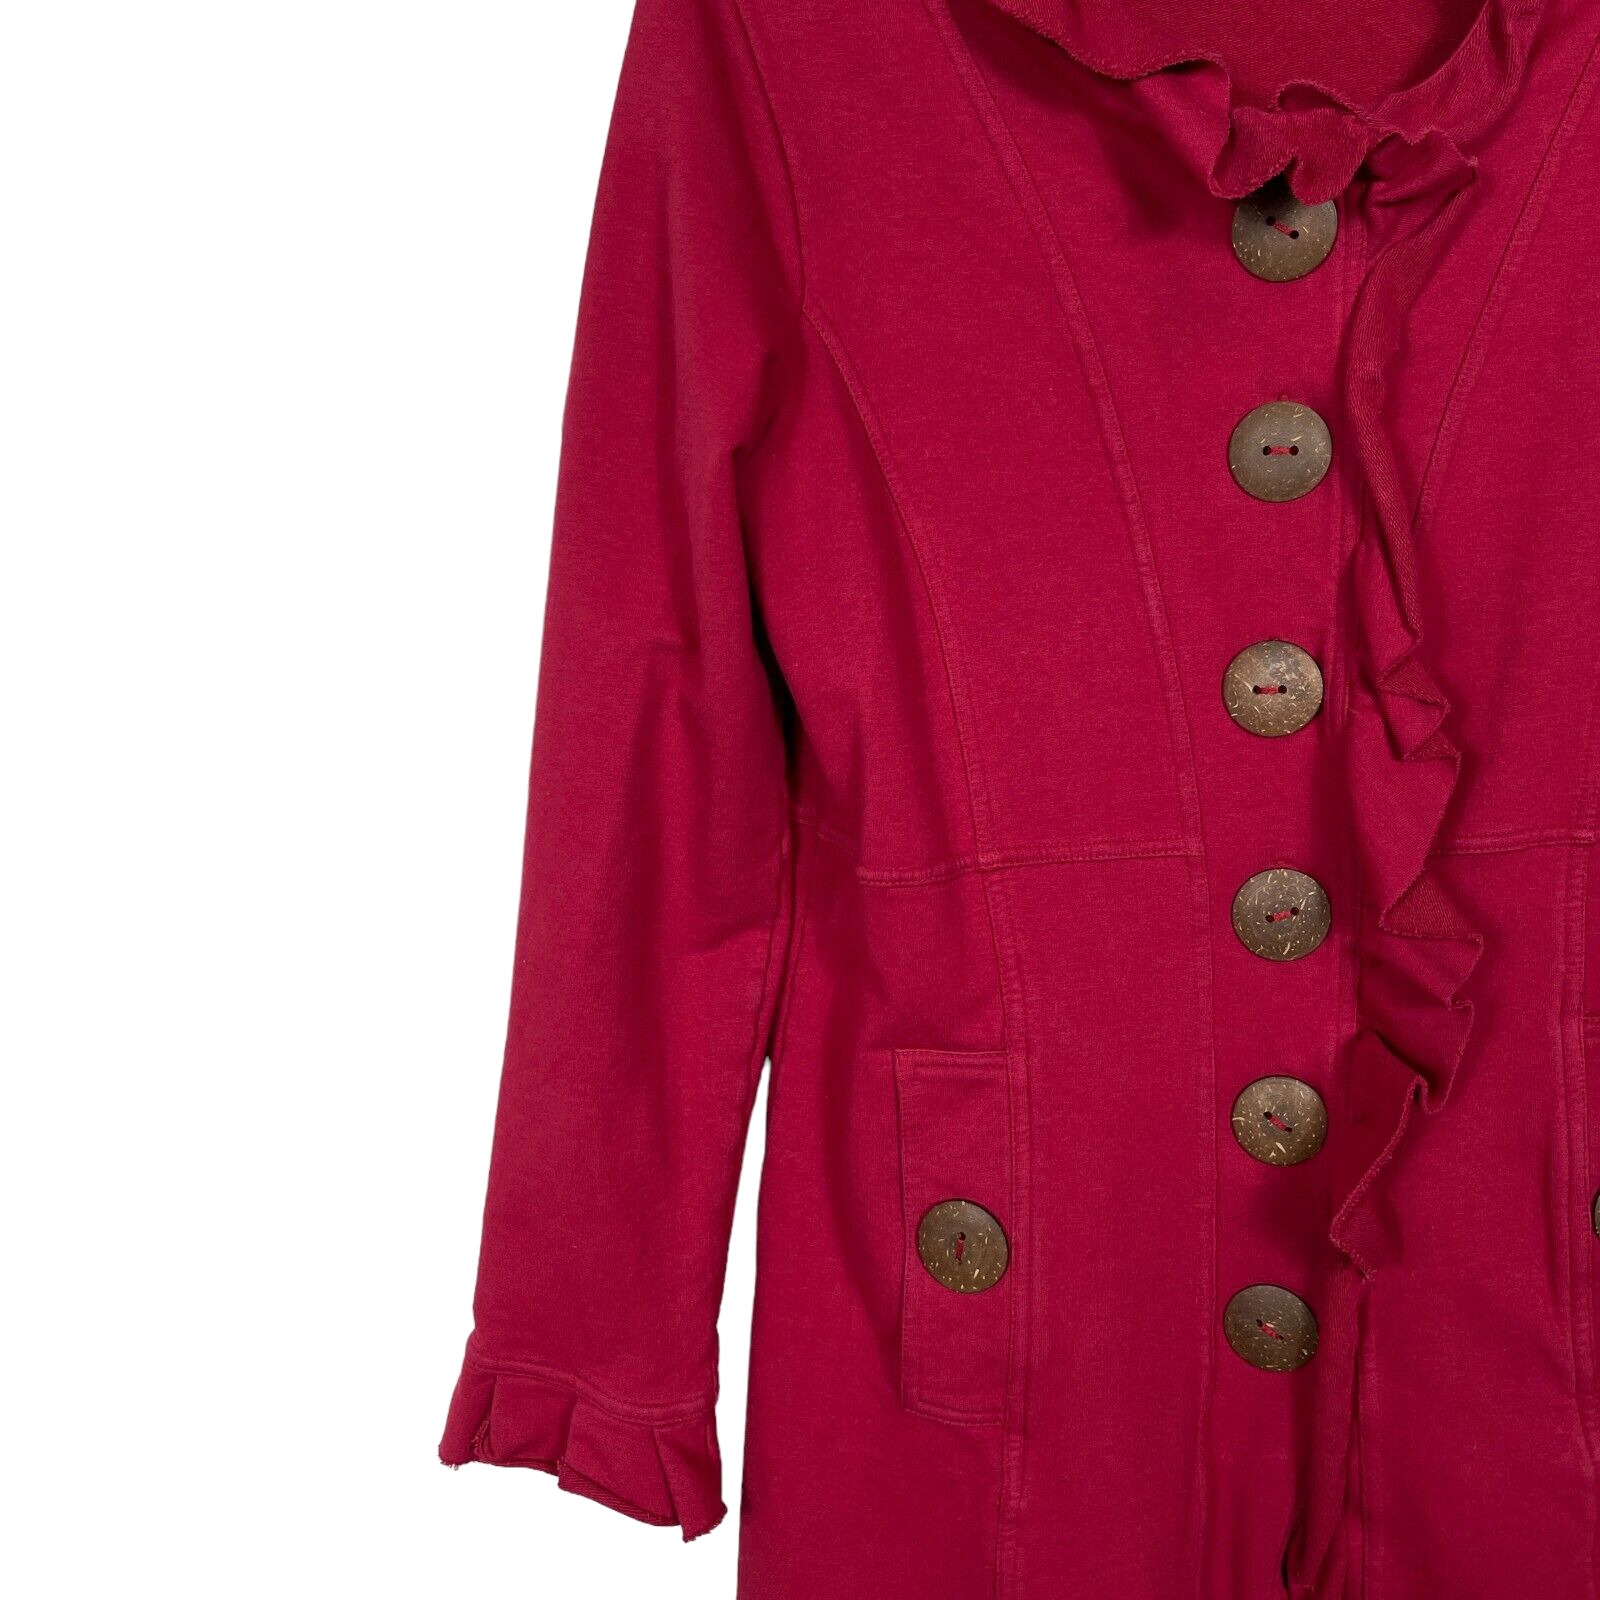 Neon Buddha Sweater Jacket Small Cranberry Red Bi… - image 6